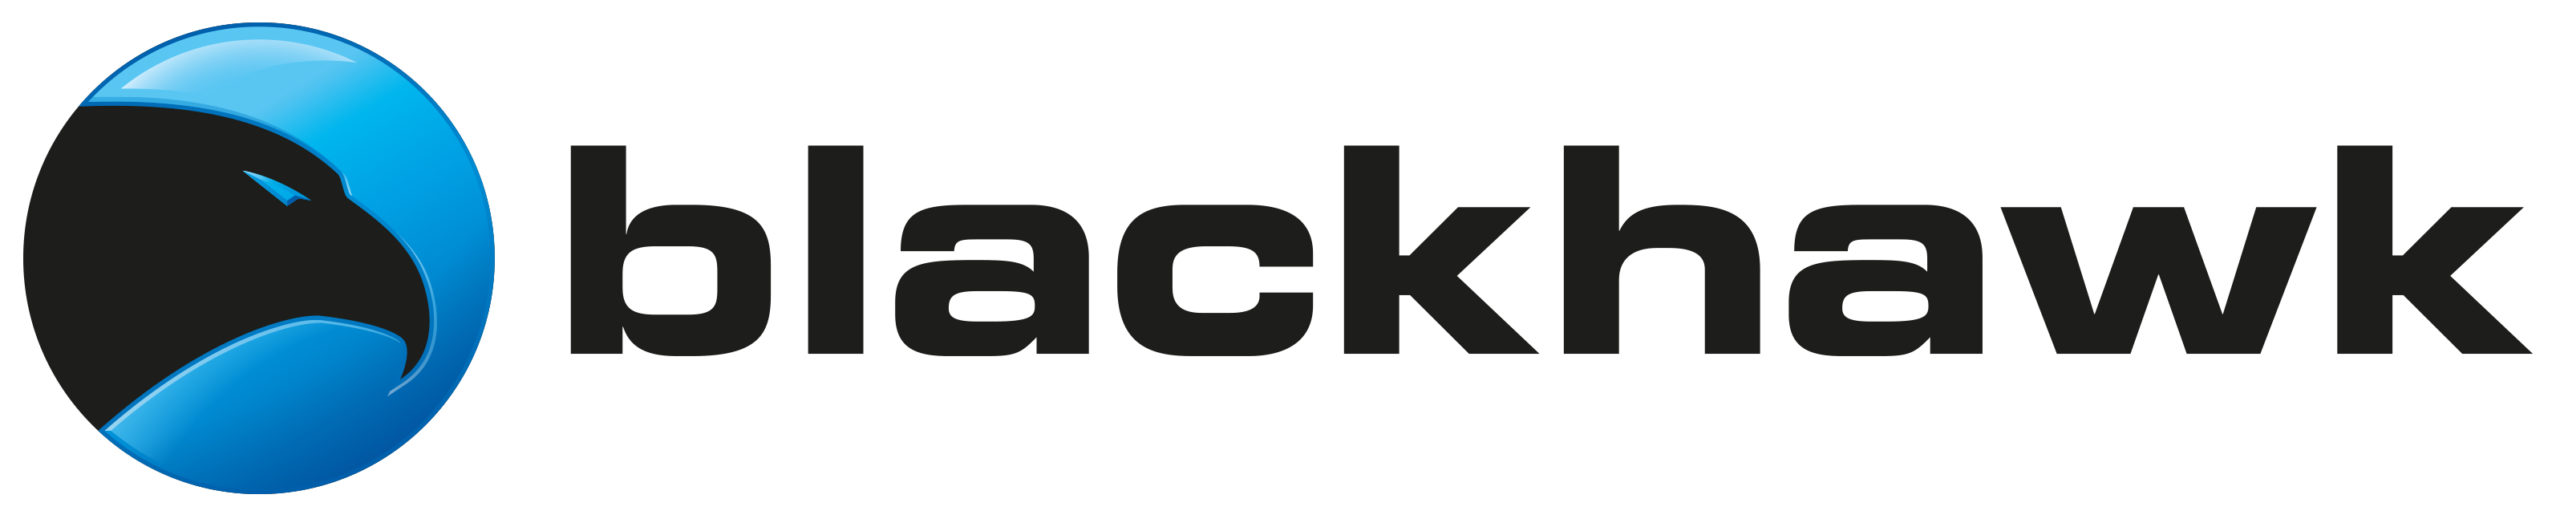 Blackhawk-Logo_coloured_black-large